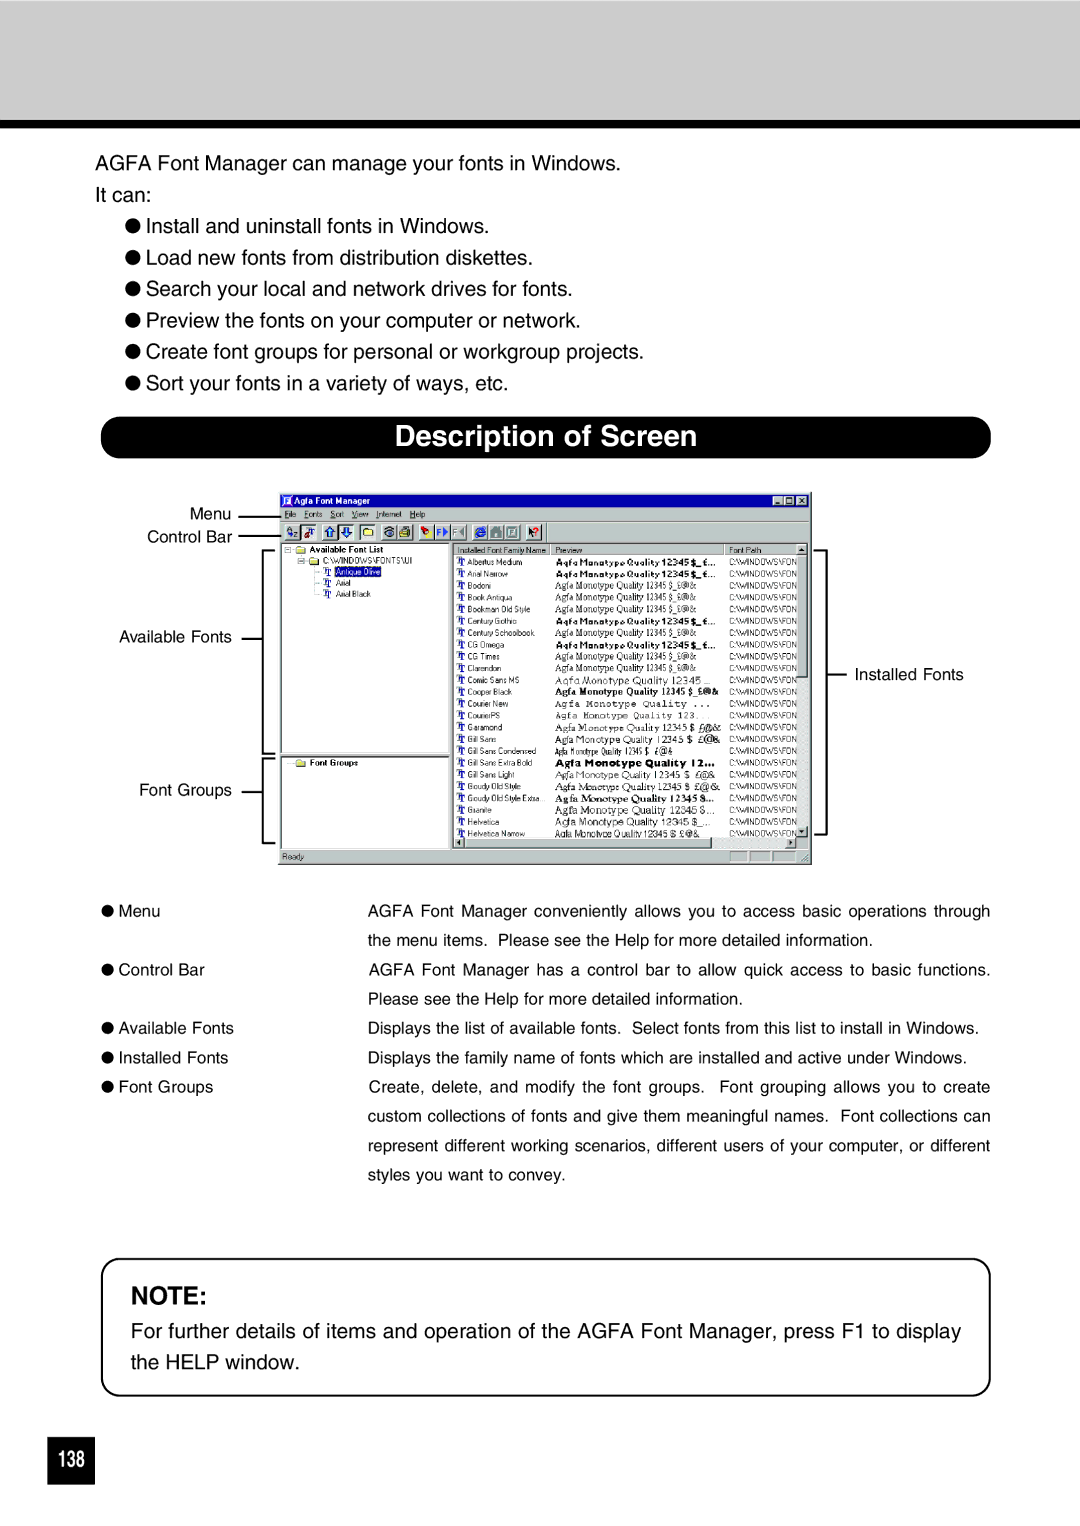 Toshiba GA-1031 manual Description of Screen, 138 